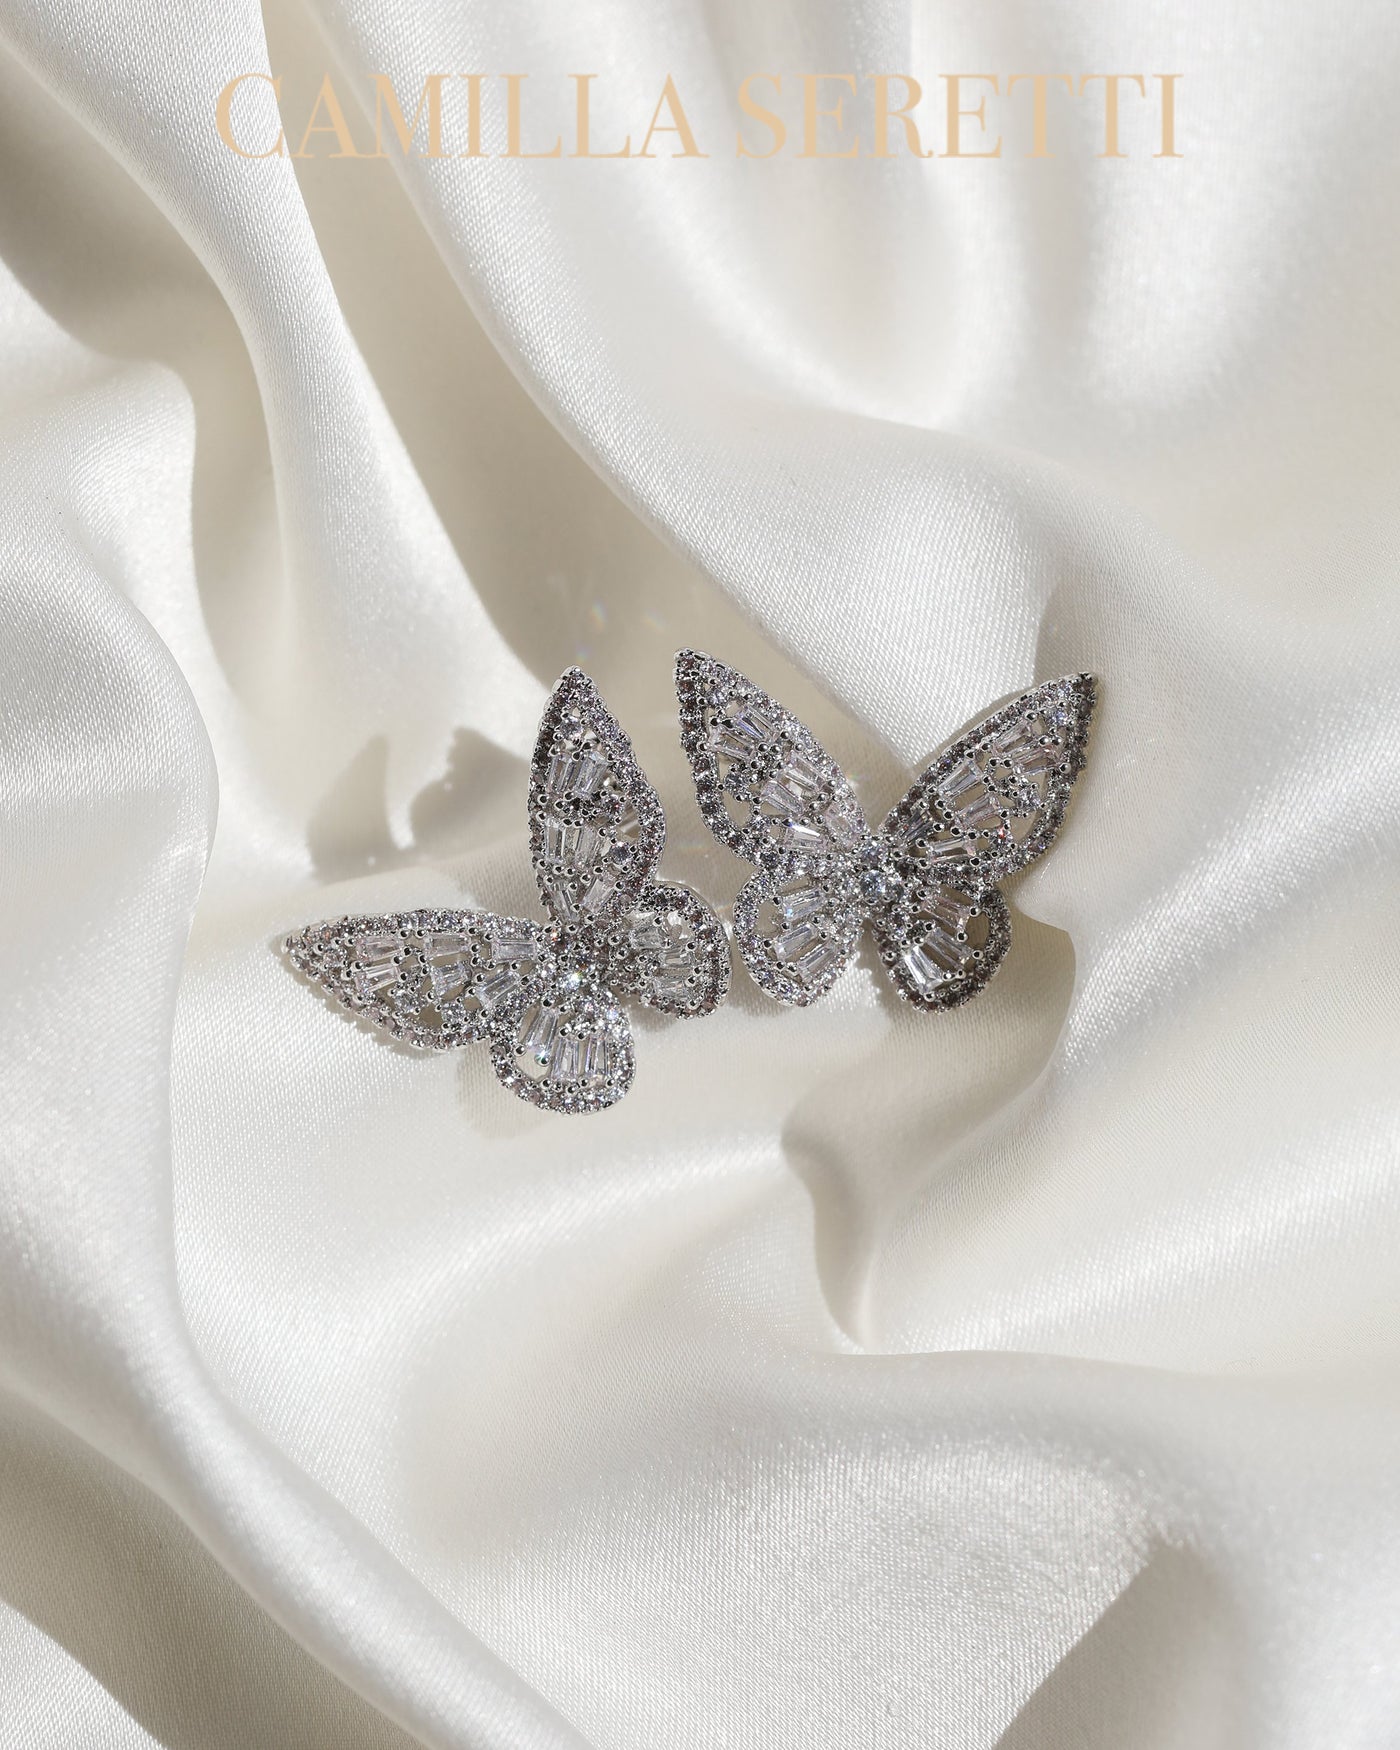 Bobbi Butterfly Earrings (Silver) - CAMILLA SERETTI